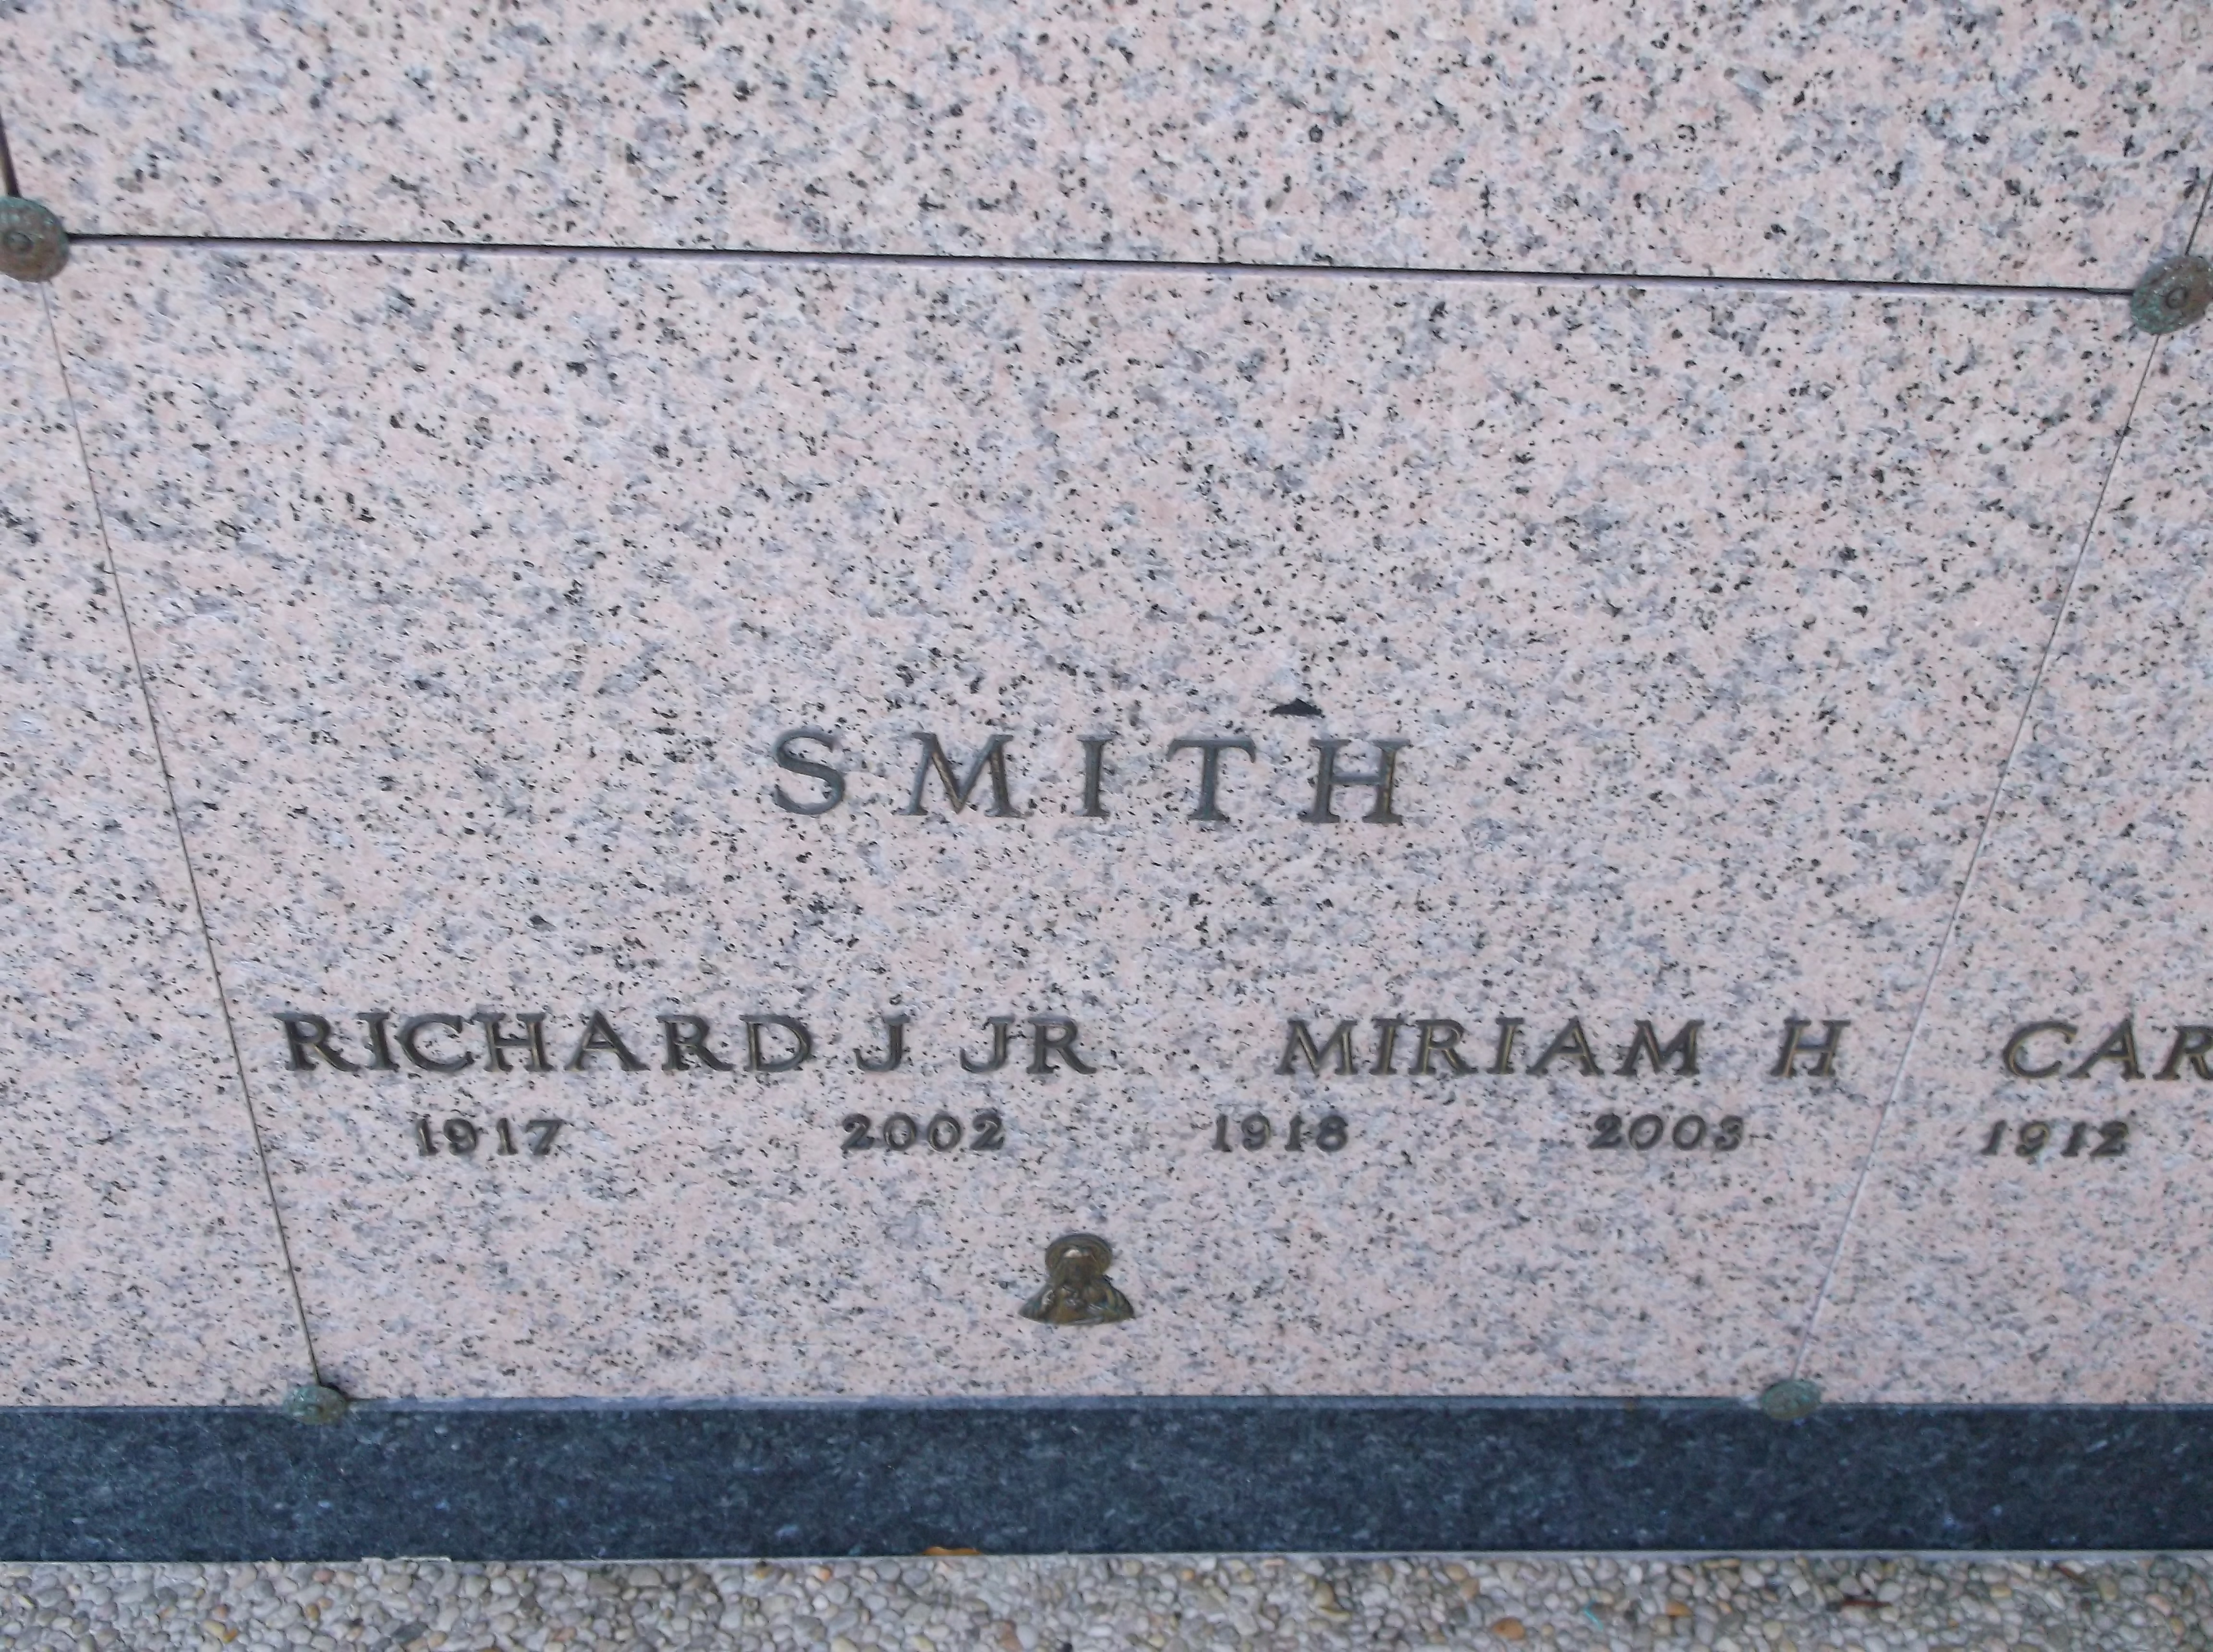 Richard J Smith, Jr